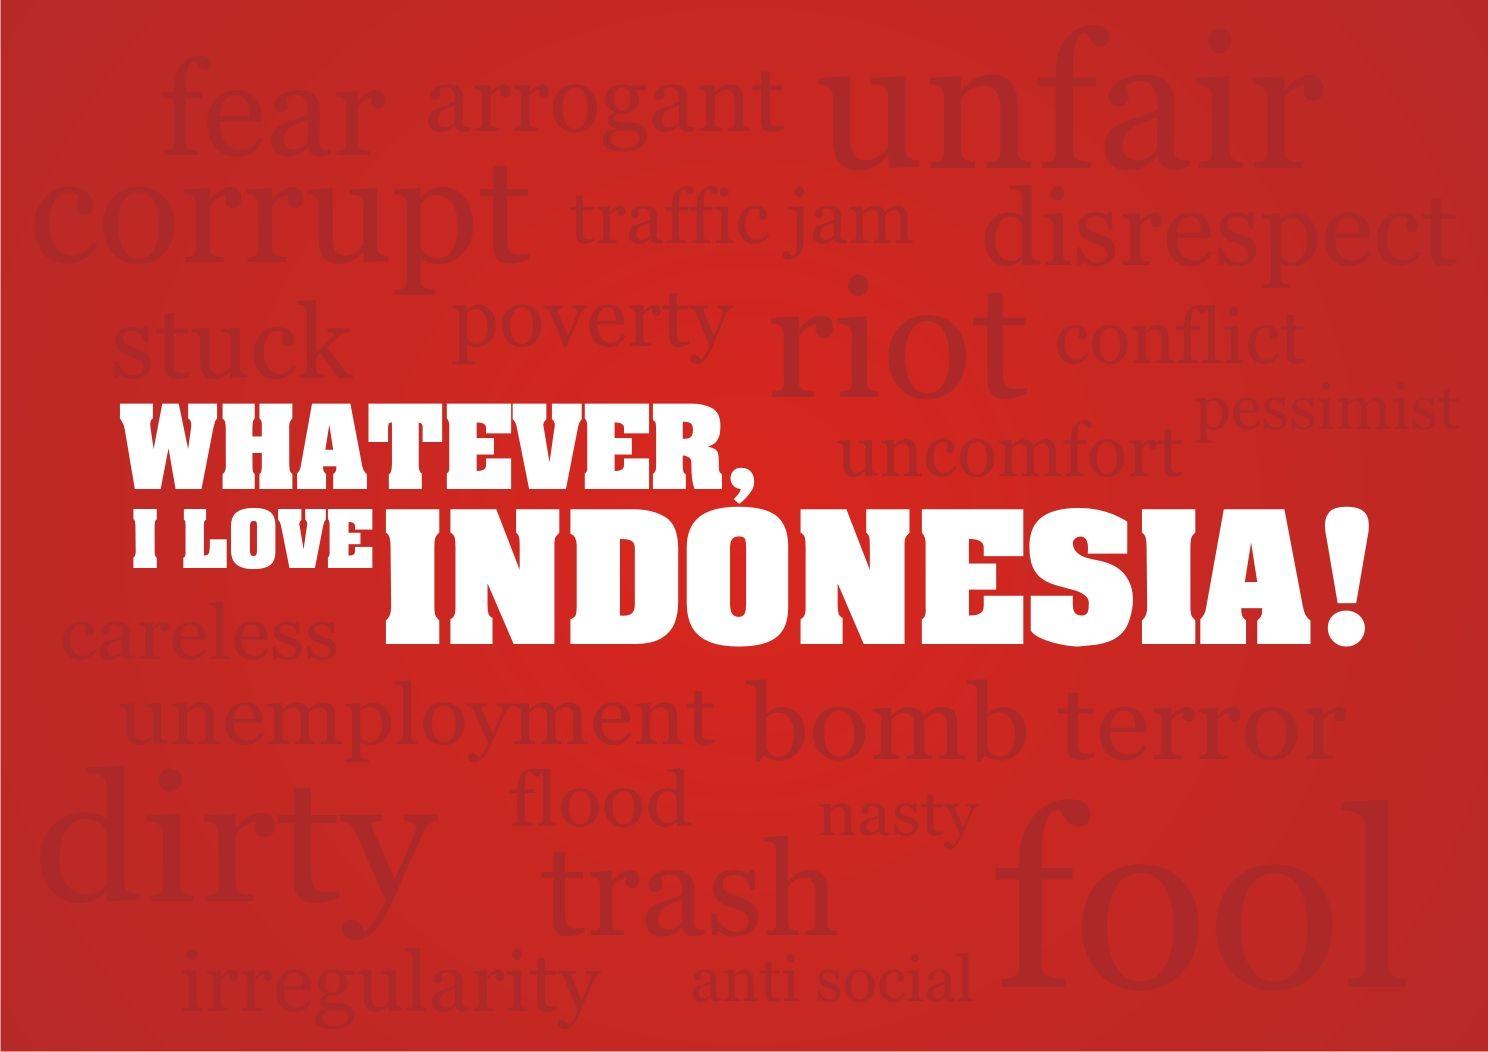 NEW WALLPAPER ON 2012: Whatever I Love Indonesia Wallpaper